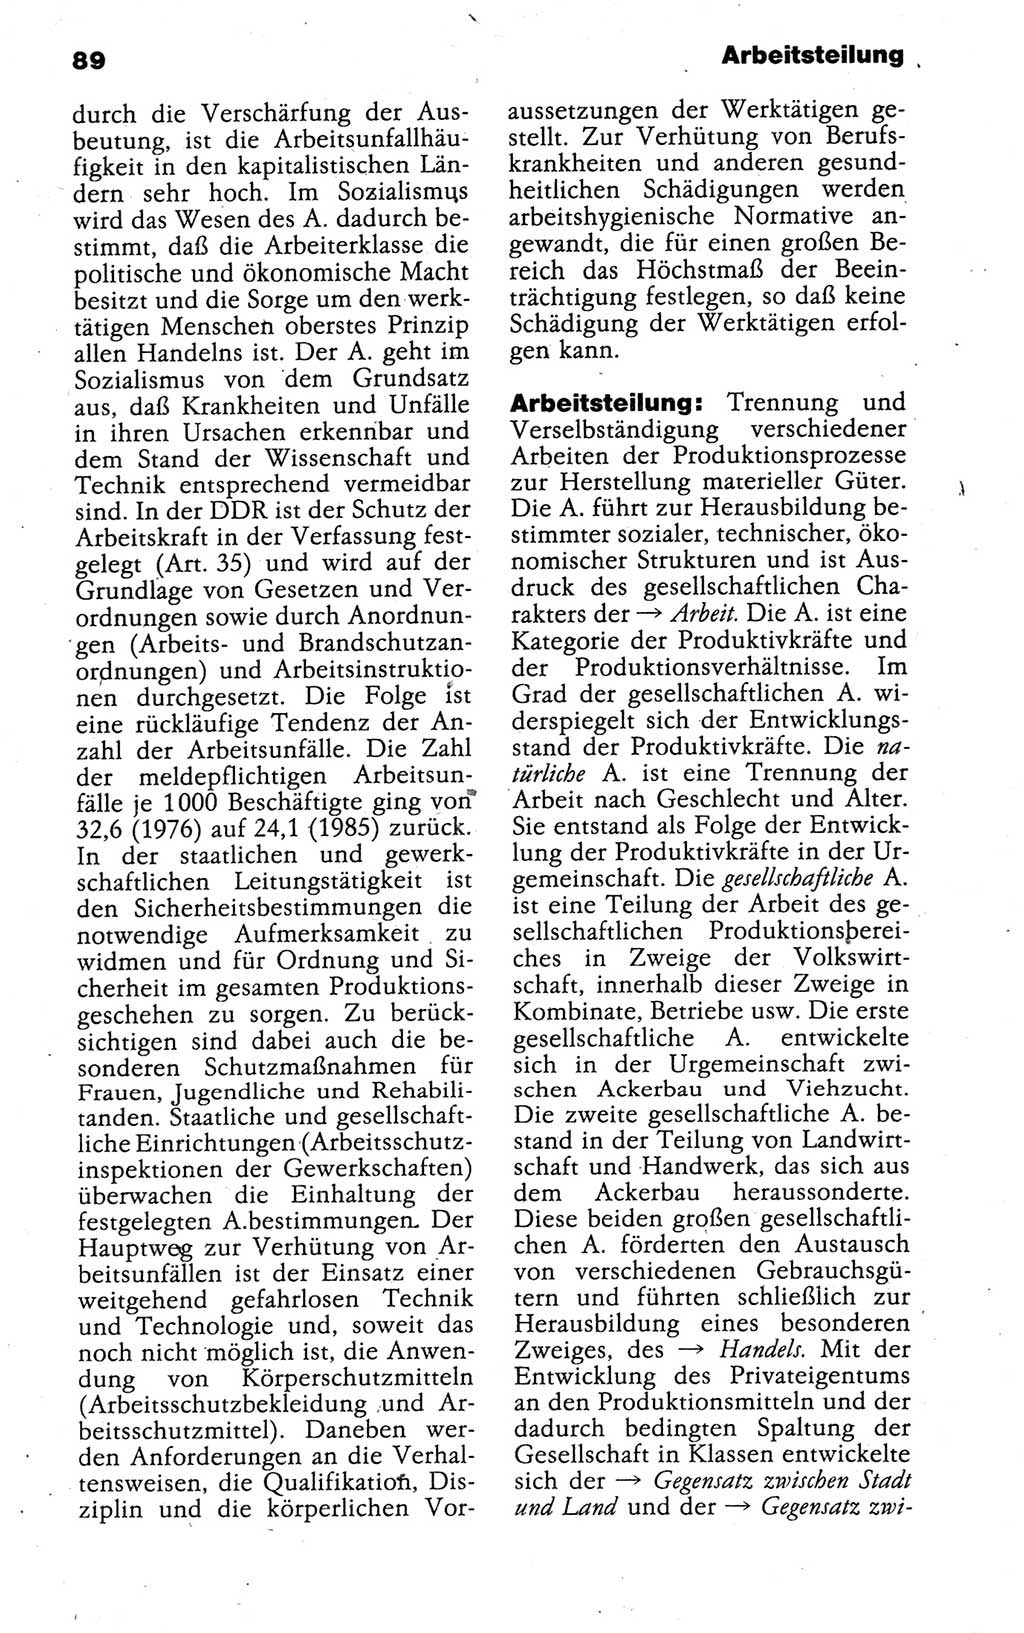 Kleines politisches Wörterbuch [Deutsche Demokratische Republik (DDR)] 1988, Seite 89 (Kl. pol. Wb. DDR 1988, S. 89)